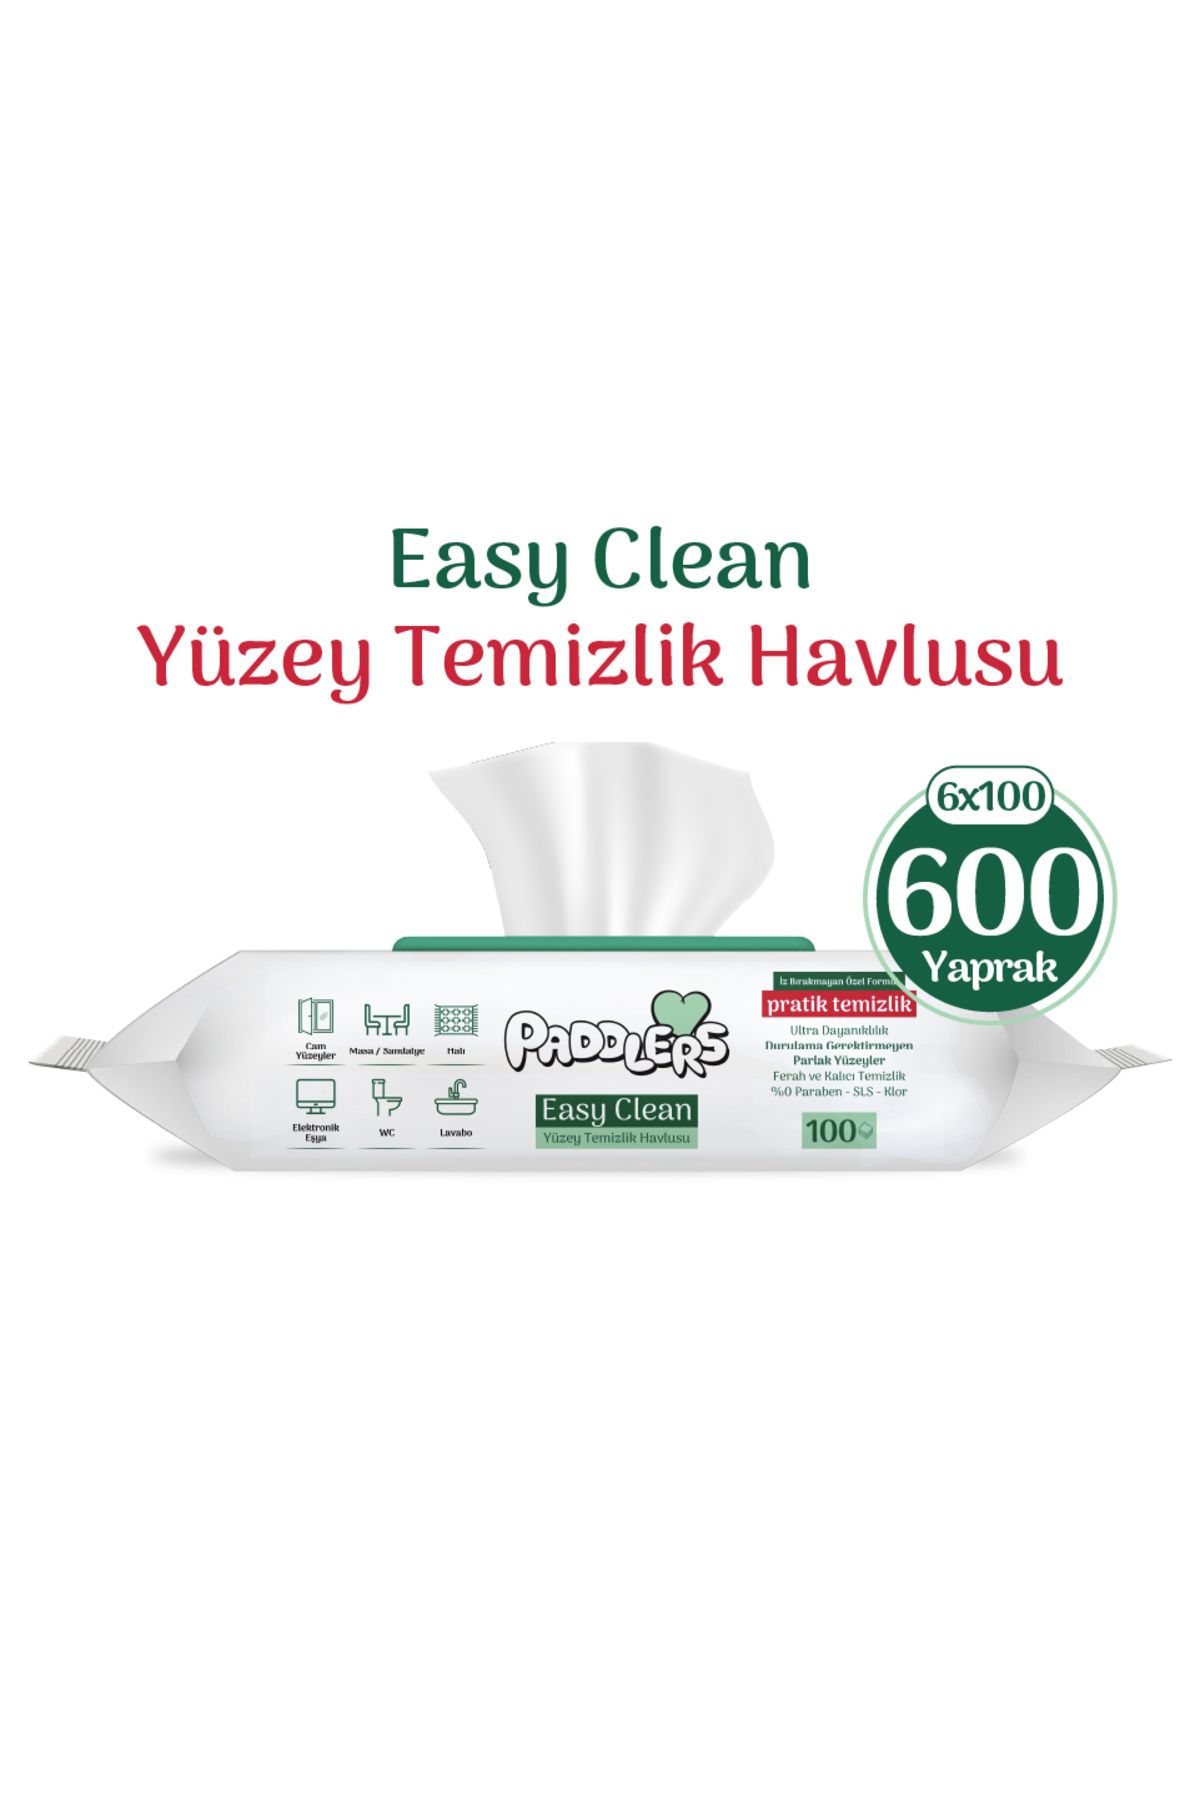 Paddlers Easy Clean Beyaz Sabun Katkılı Yüzey Temizlik Havlusu 6x100 (600 Yaprak)